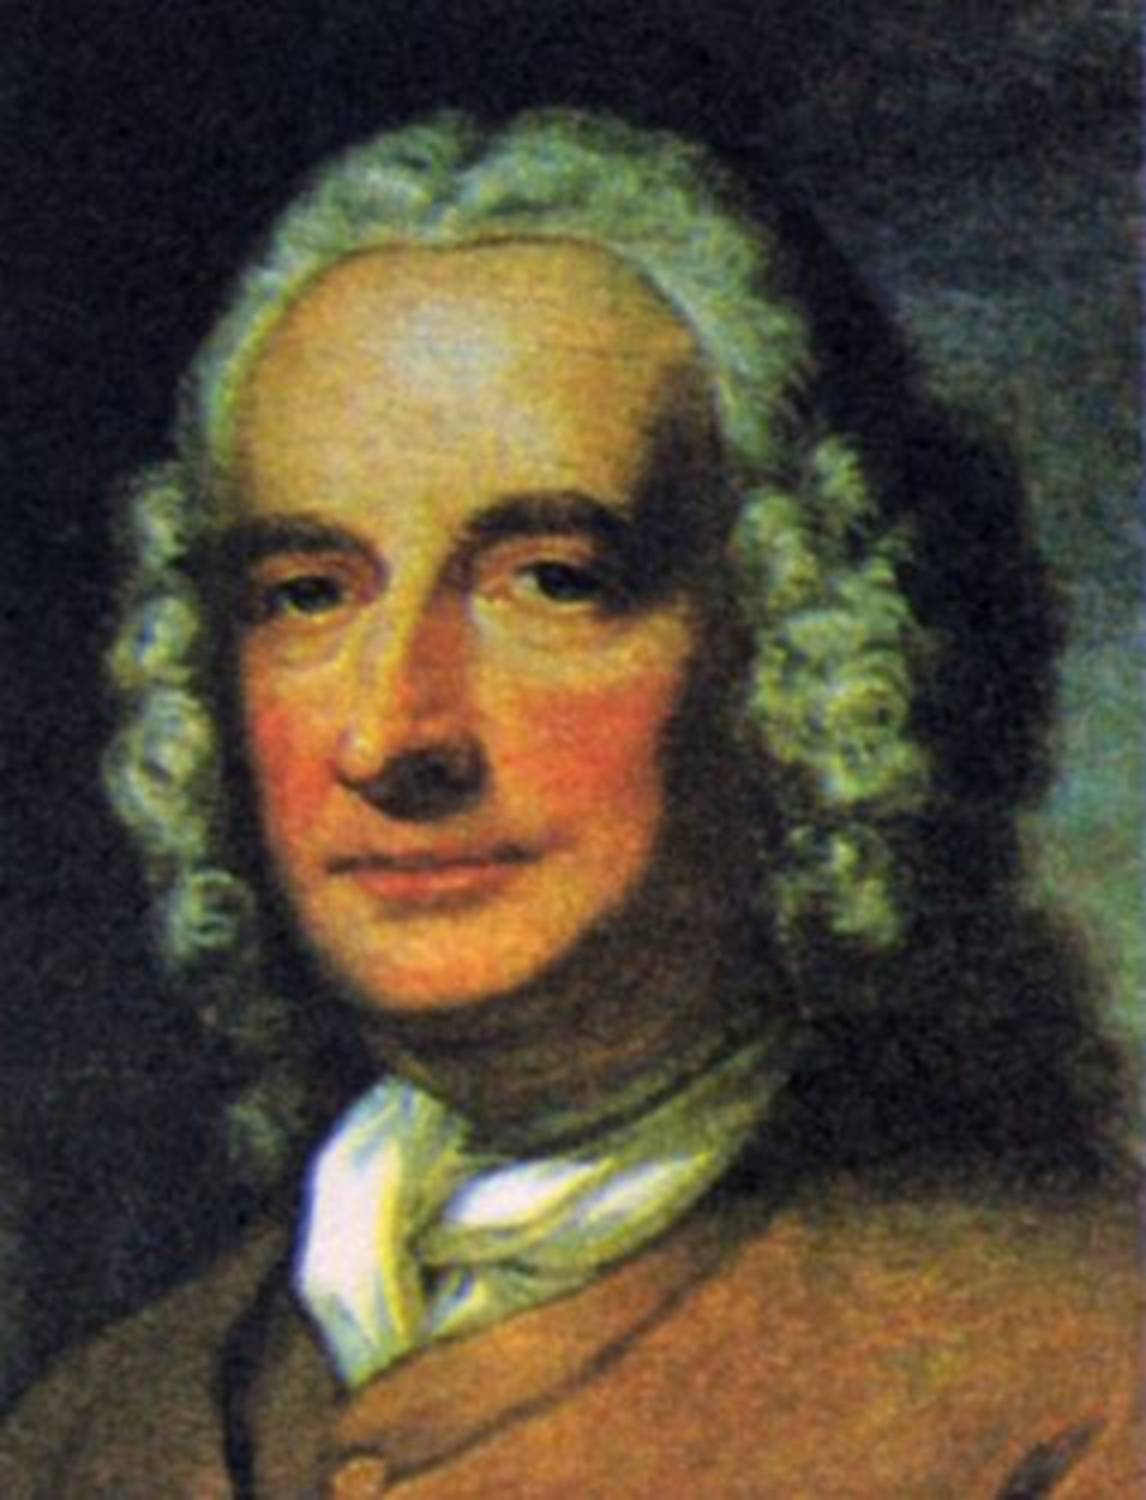 22 апреля – 310 лет со дня рожденияГенри Филдинга (1707-1754), английского писателя, драматурга.